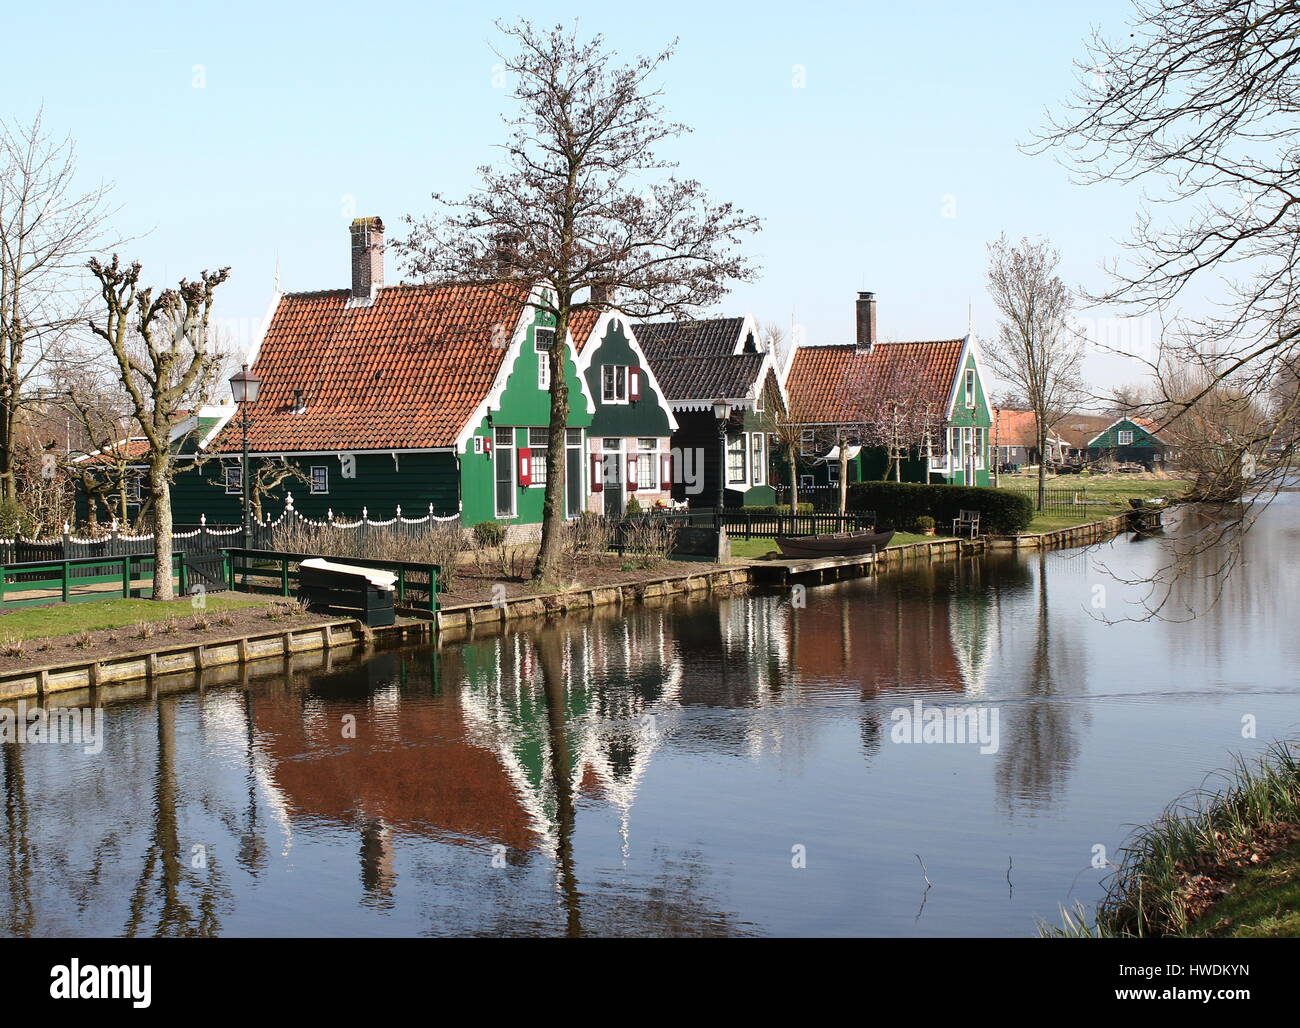 Traditional Dutch wooden houses at the village of Zaanse Schans, Zaandam / Zaandijk, Netherlands Stock Photo